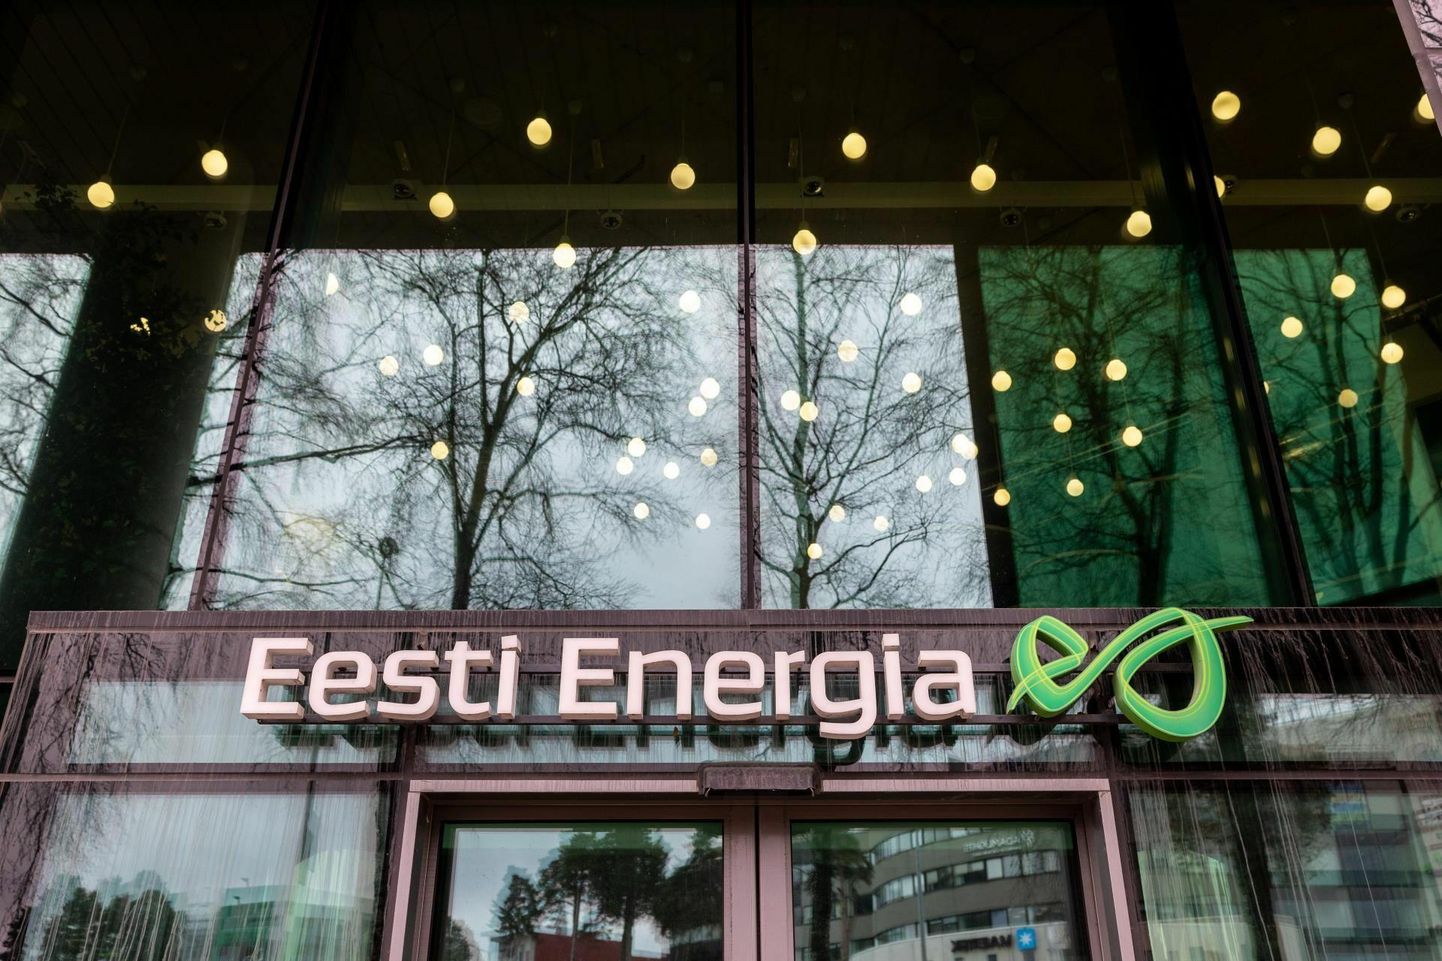 Riigile kuuluv Eesti Energia koondab klienditeeninduse ja energiateenustega seotud teadmised ja tegevuse kontserni ühte ettevõttesse Enefiti kaubamärgi alla. Muudatuse siht on pakkuda paremat kliendikogemust.